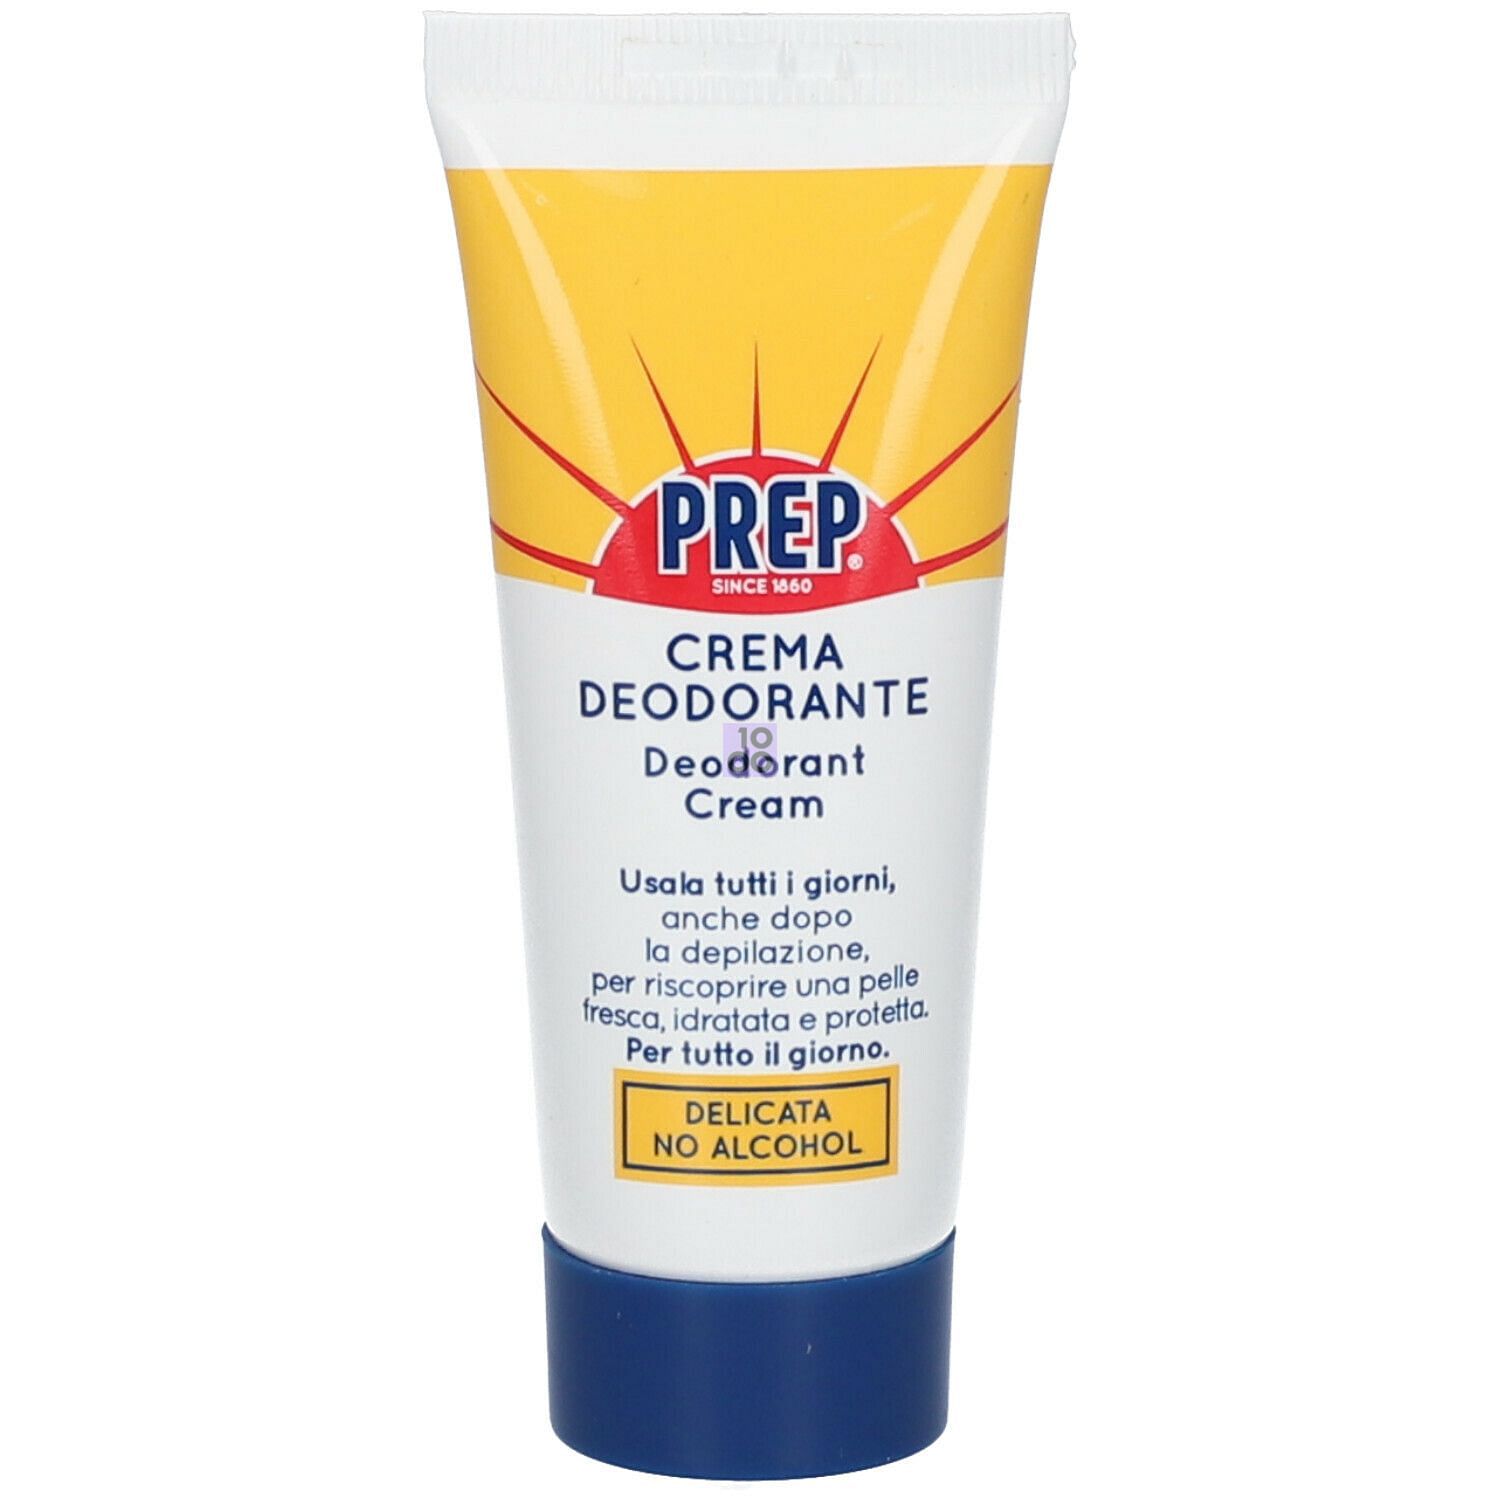 Prep Crema Deodorante 35 Ml: Utilizzo, effetti collaterali e prezzo